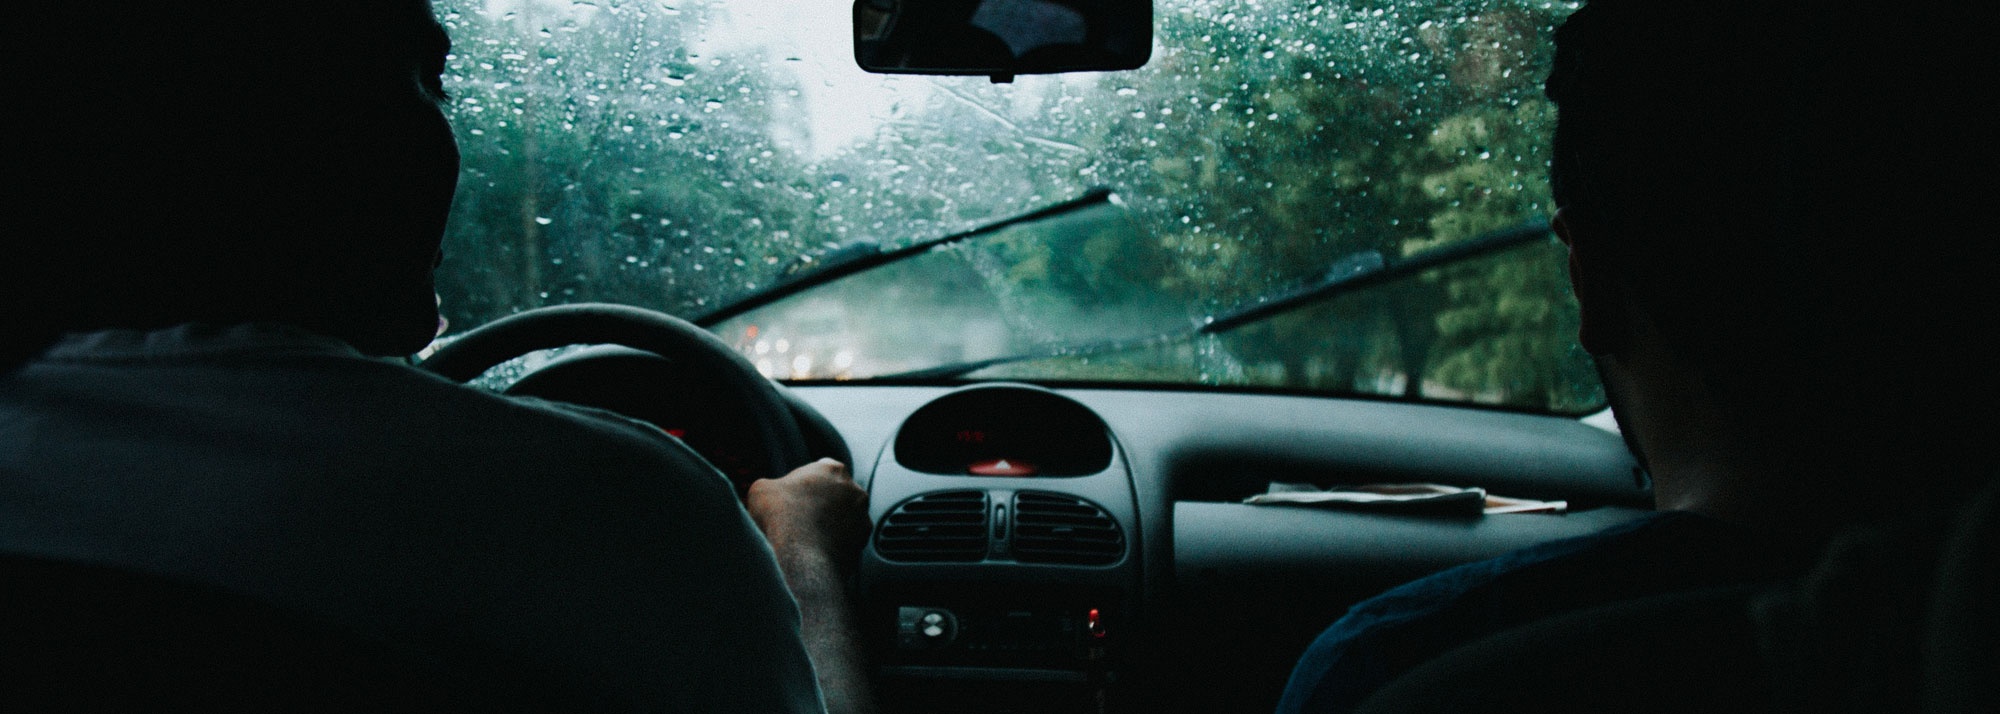 banner Como preparar o carro e conduzir com chuva?